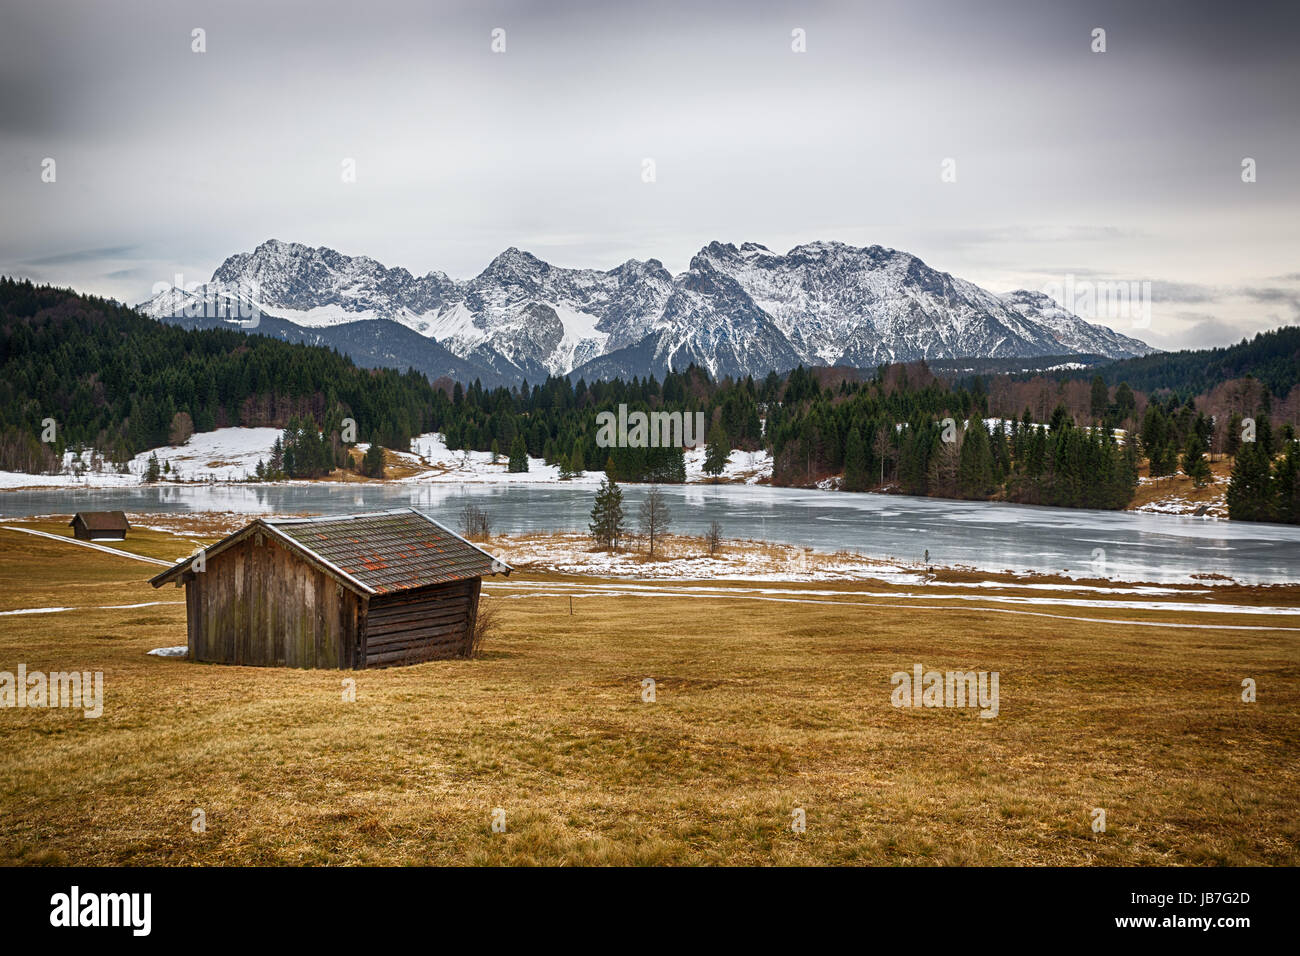 Geroldsee at wintertime, Krün, German Alps Stock Photo